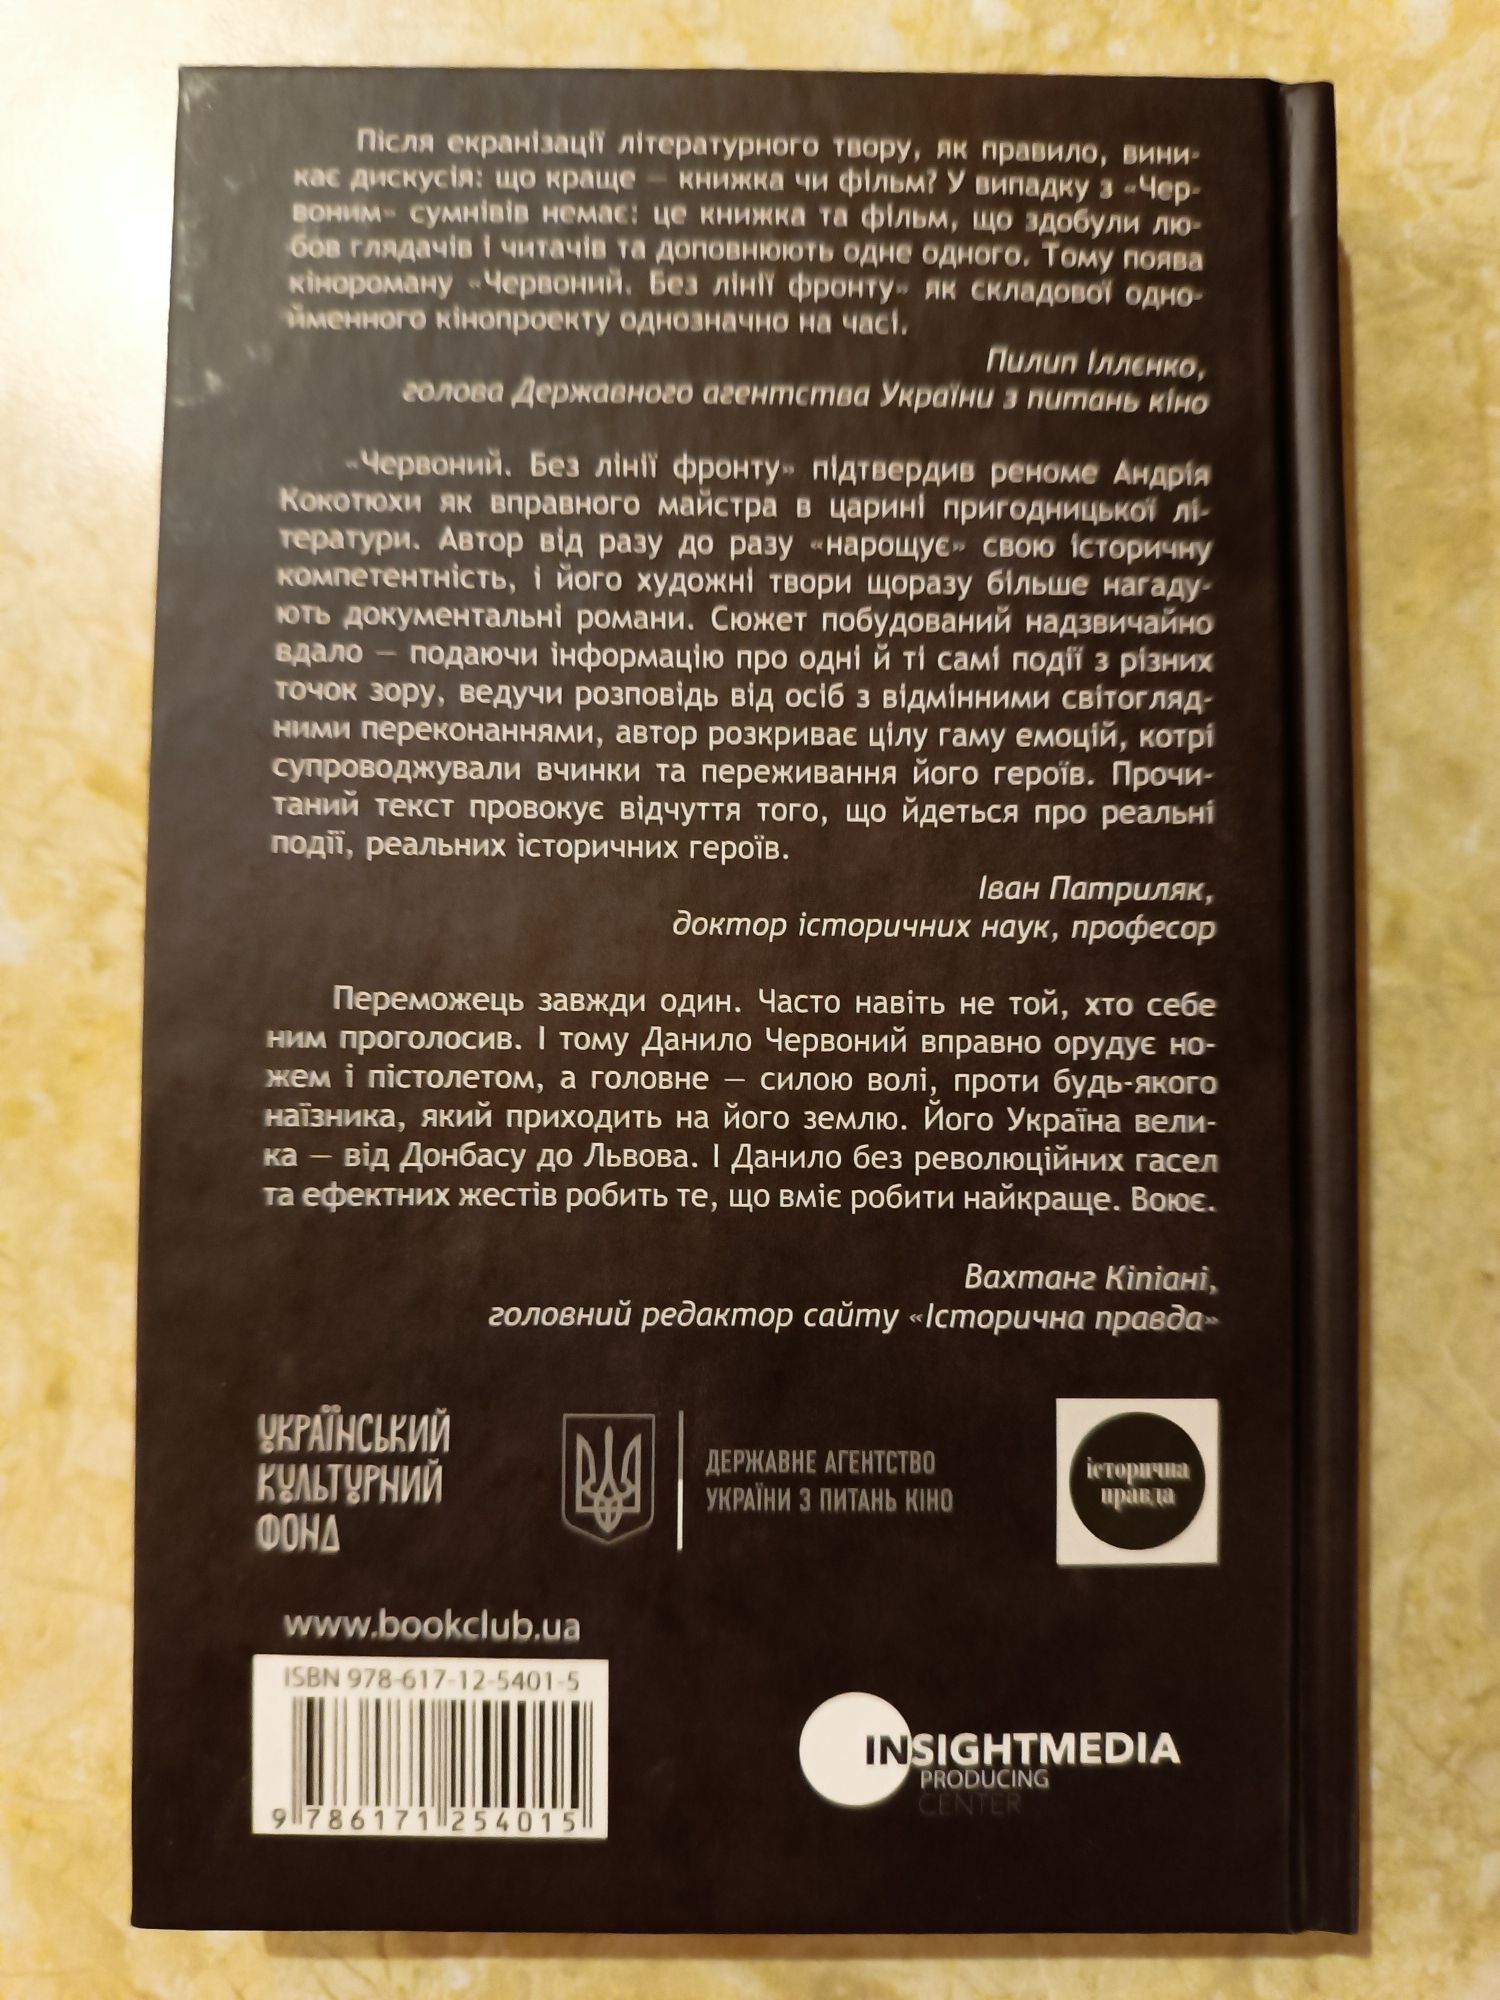 "Червоний. Без лінії фронту", вид. КСД, укр.мова, 320 стр.